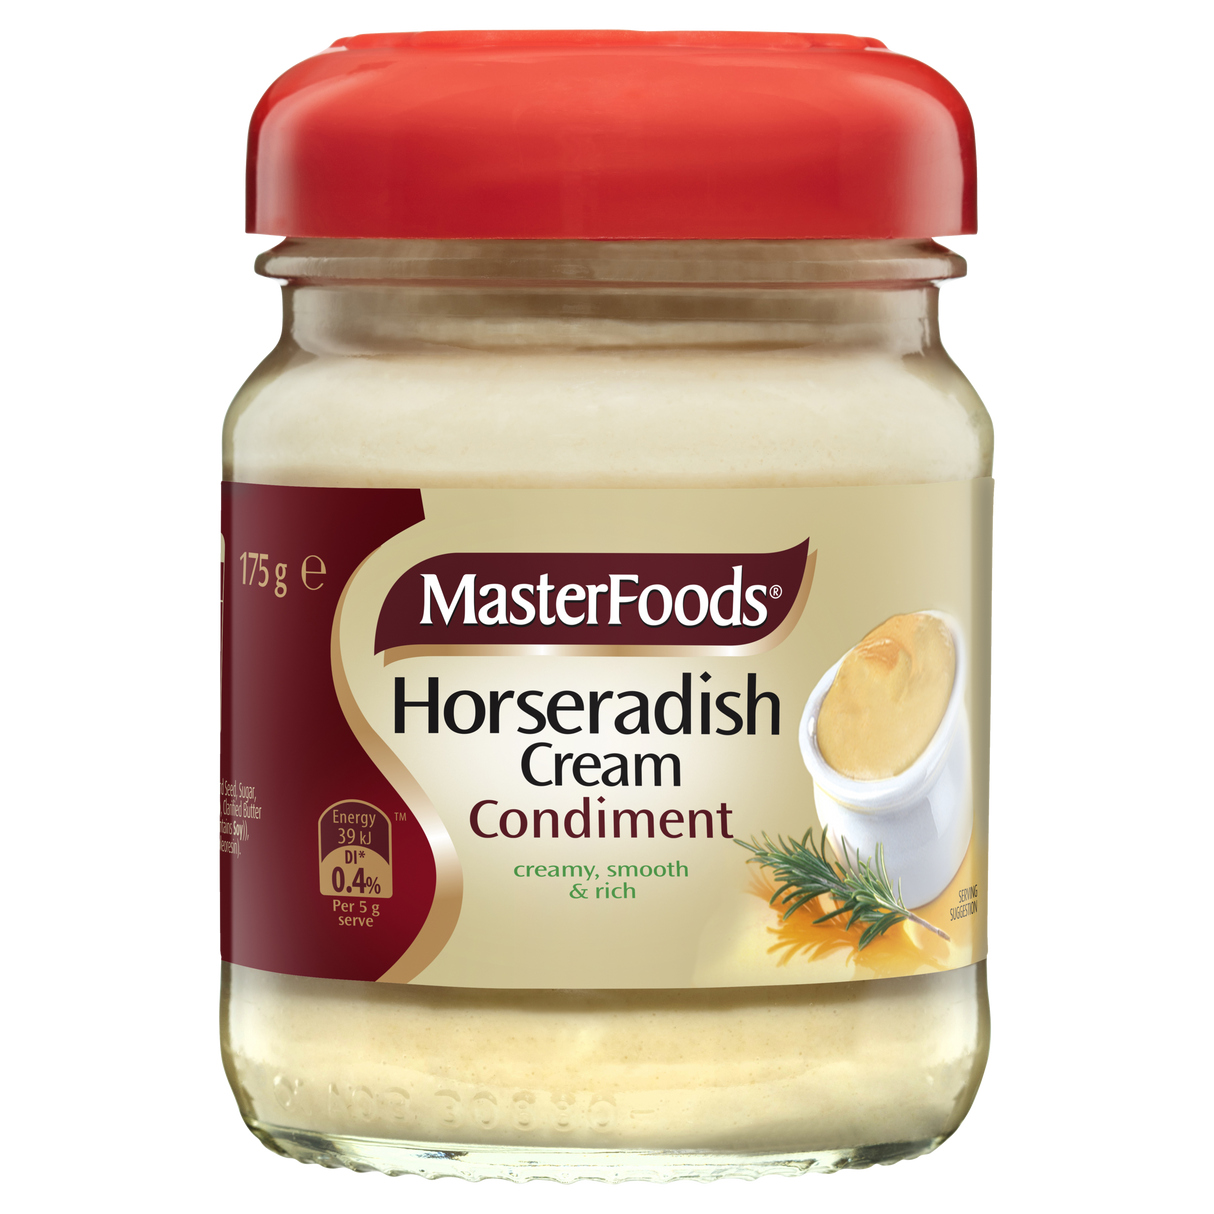 MasterFoods Horseradish Cream 175g